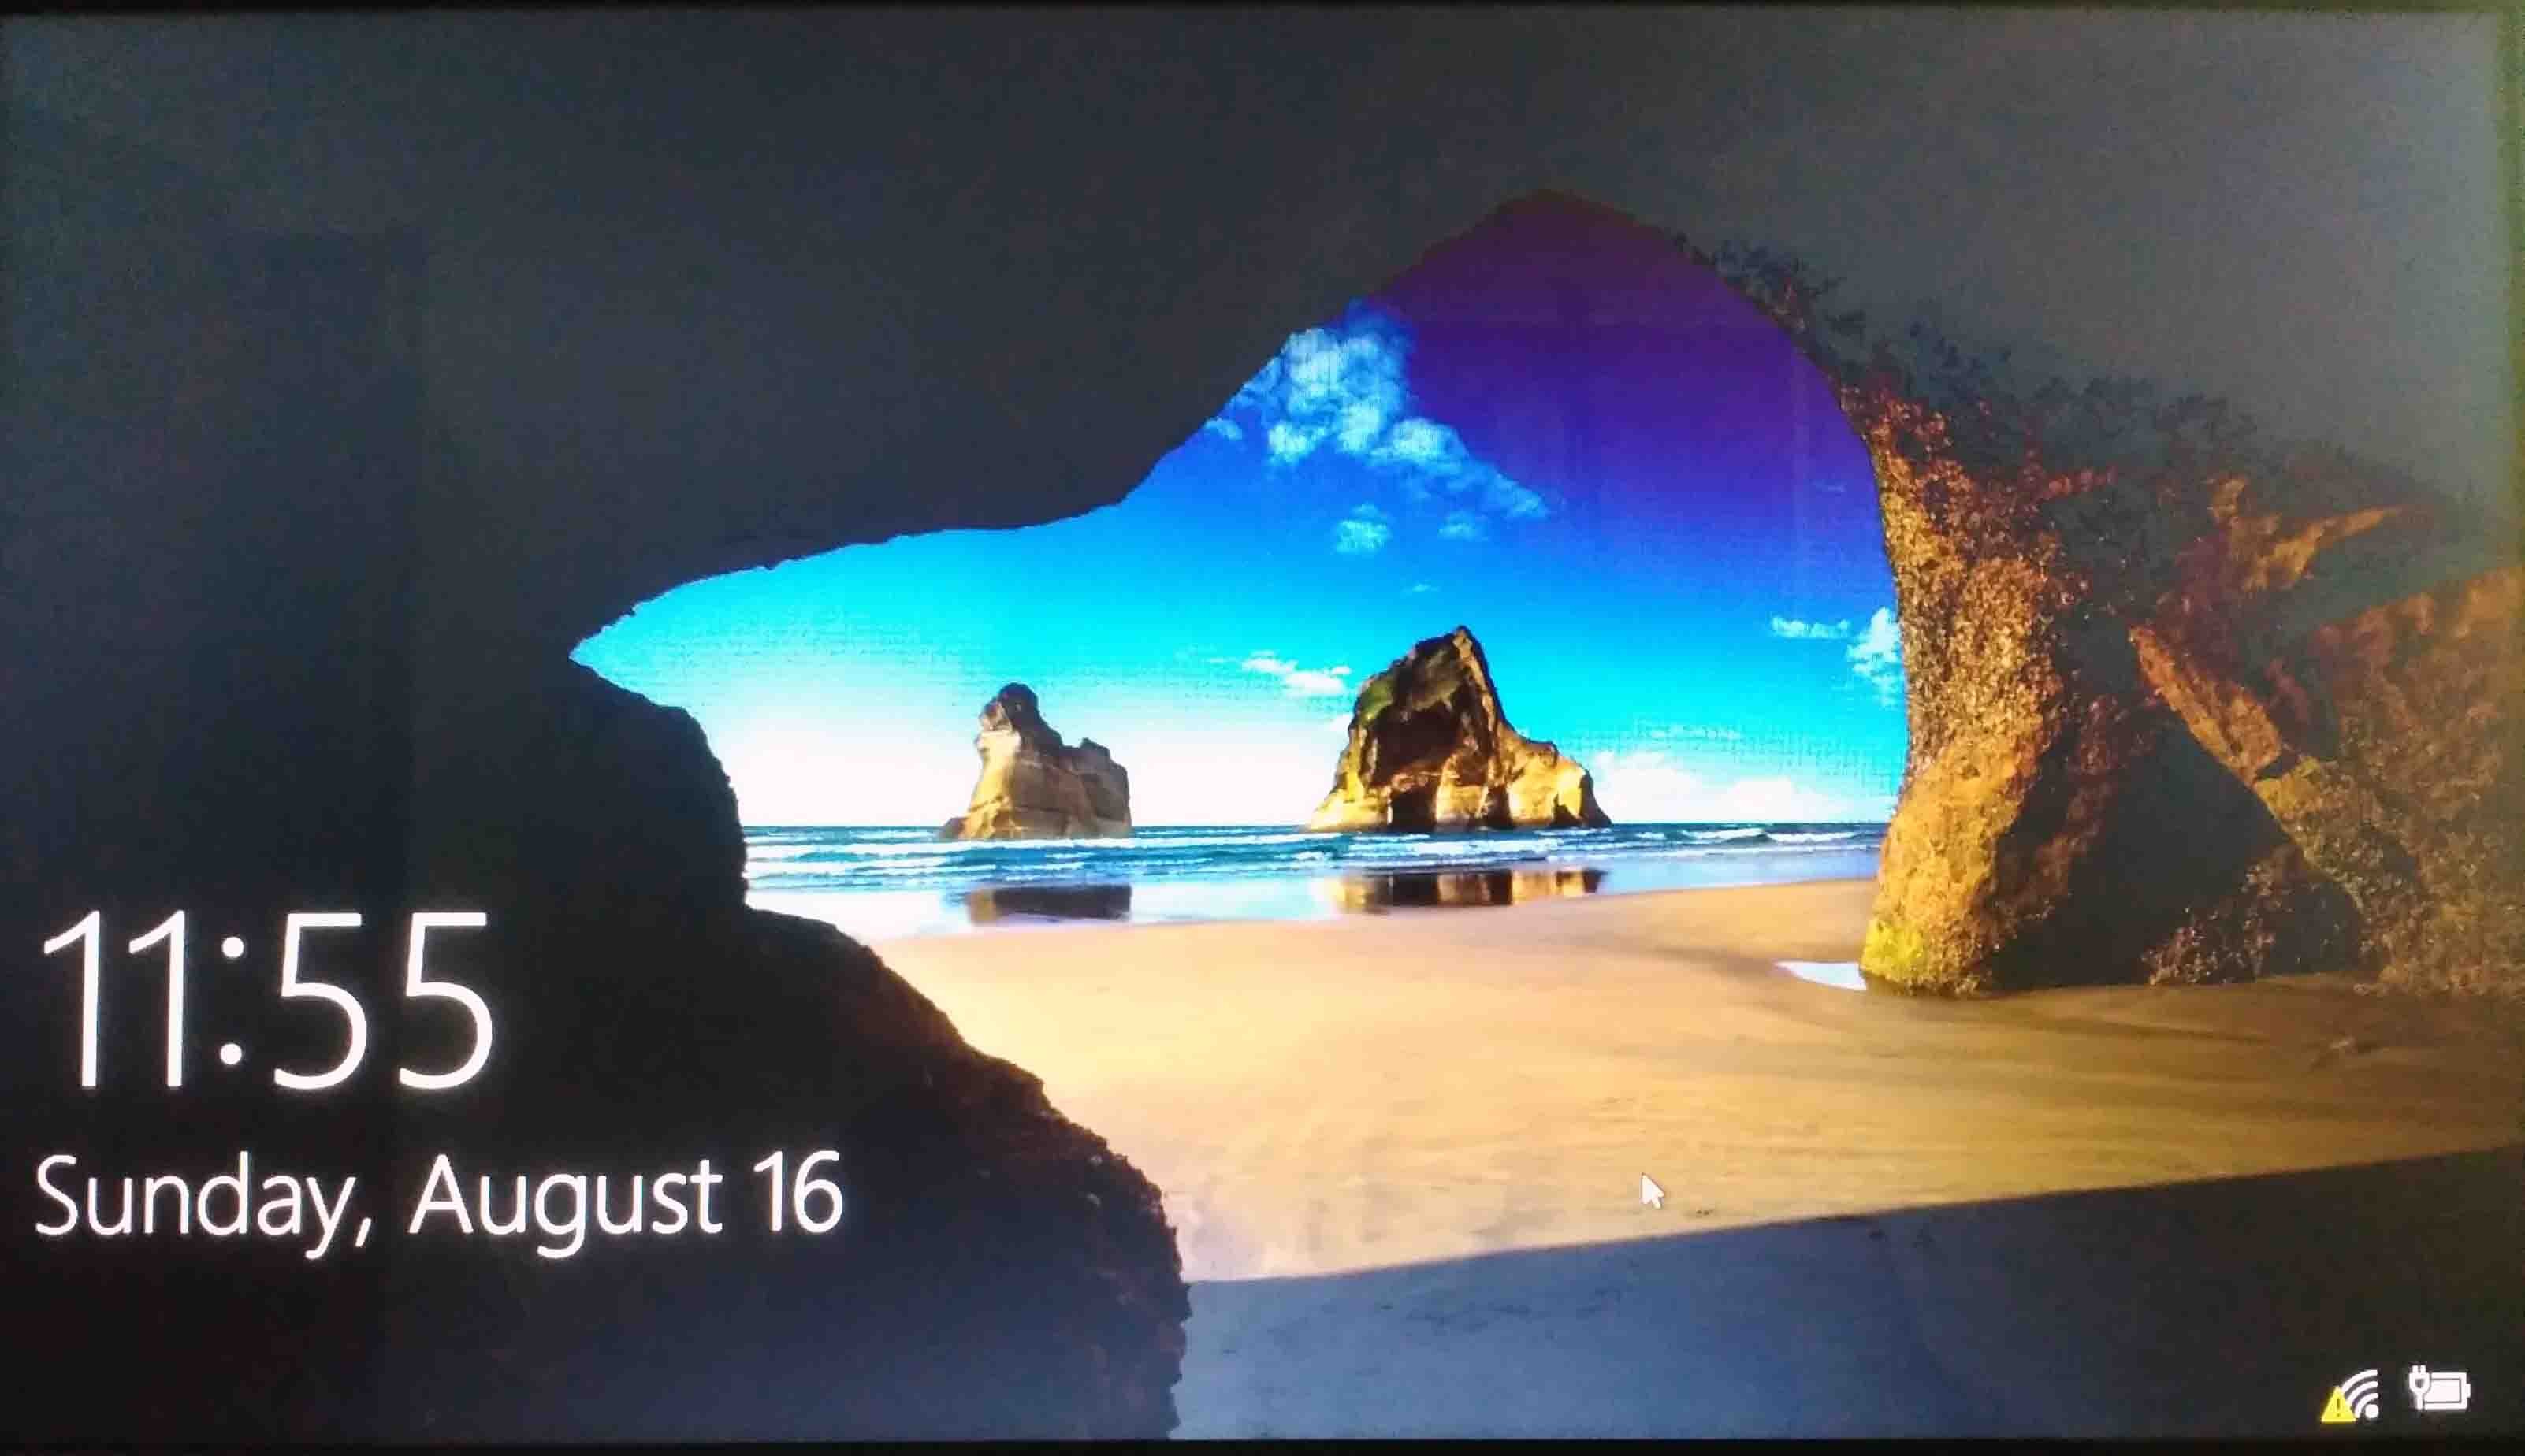 Экран блокировки Windows 10